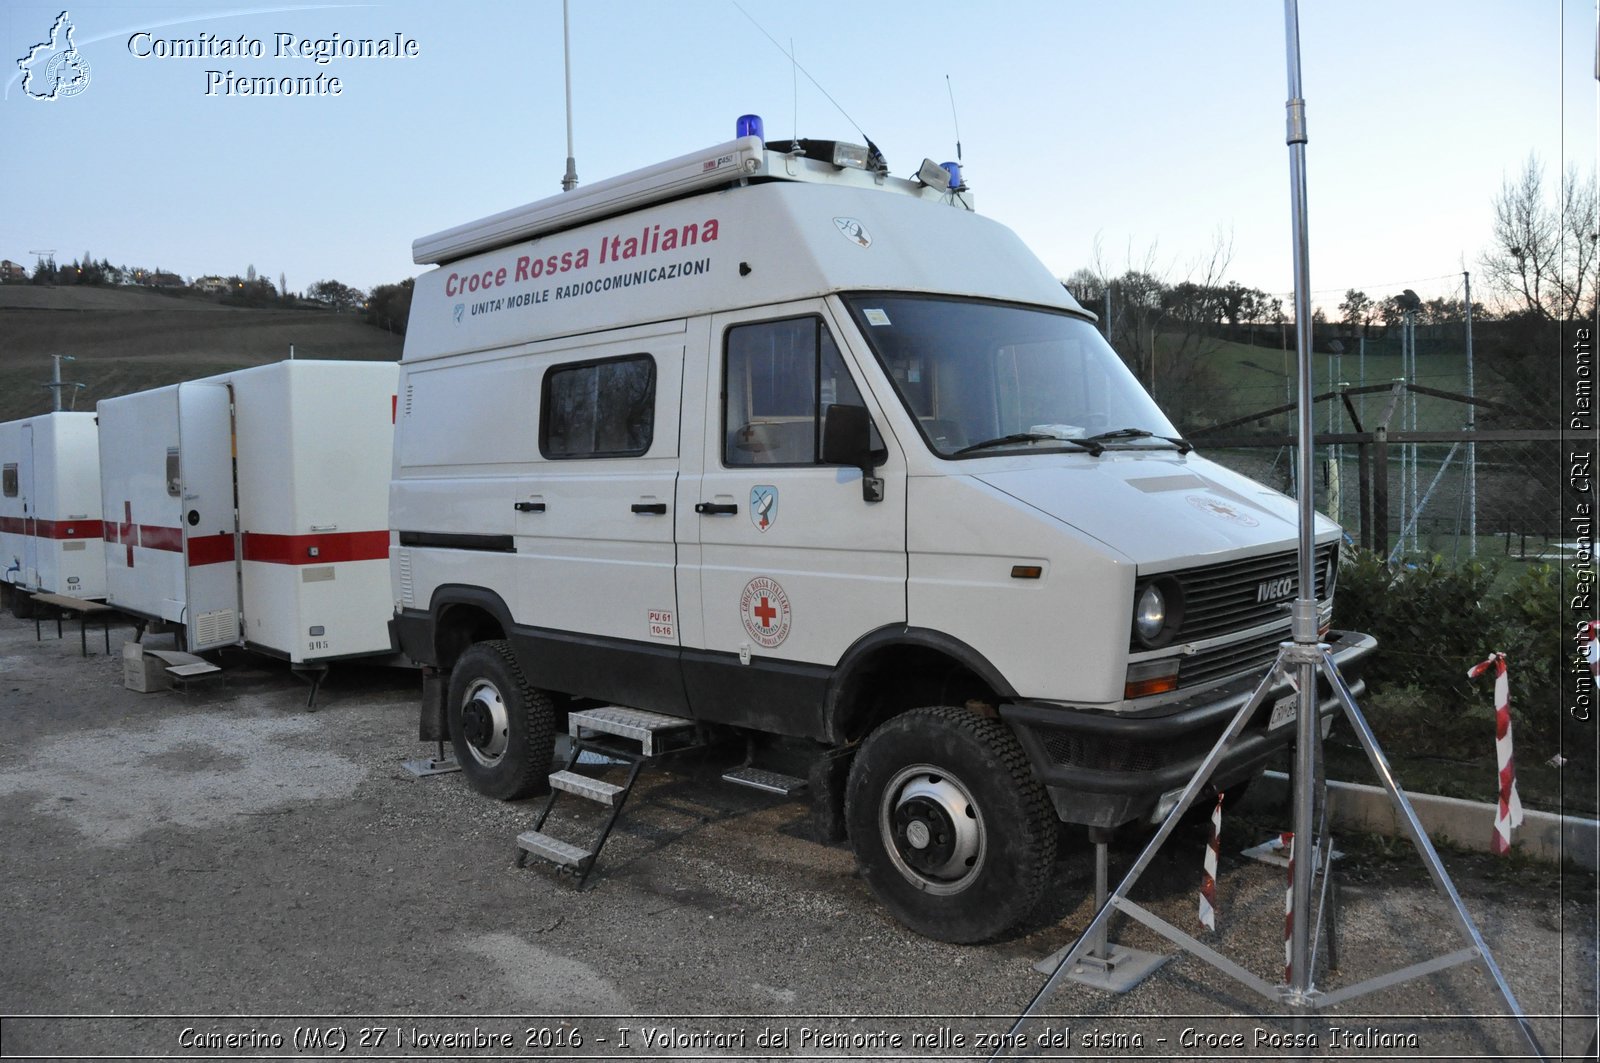 Camerino (MC) 27 Novembre 2016 - I Volontari del Piemonte nelle zone del sisma - Croce Rossa Italiana- Comitato Regionale del Piemonte